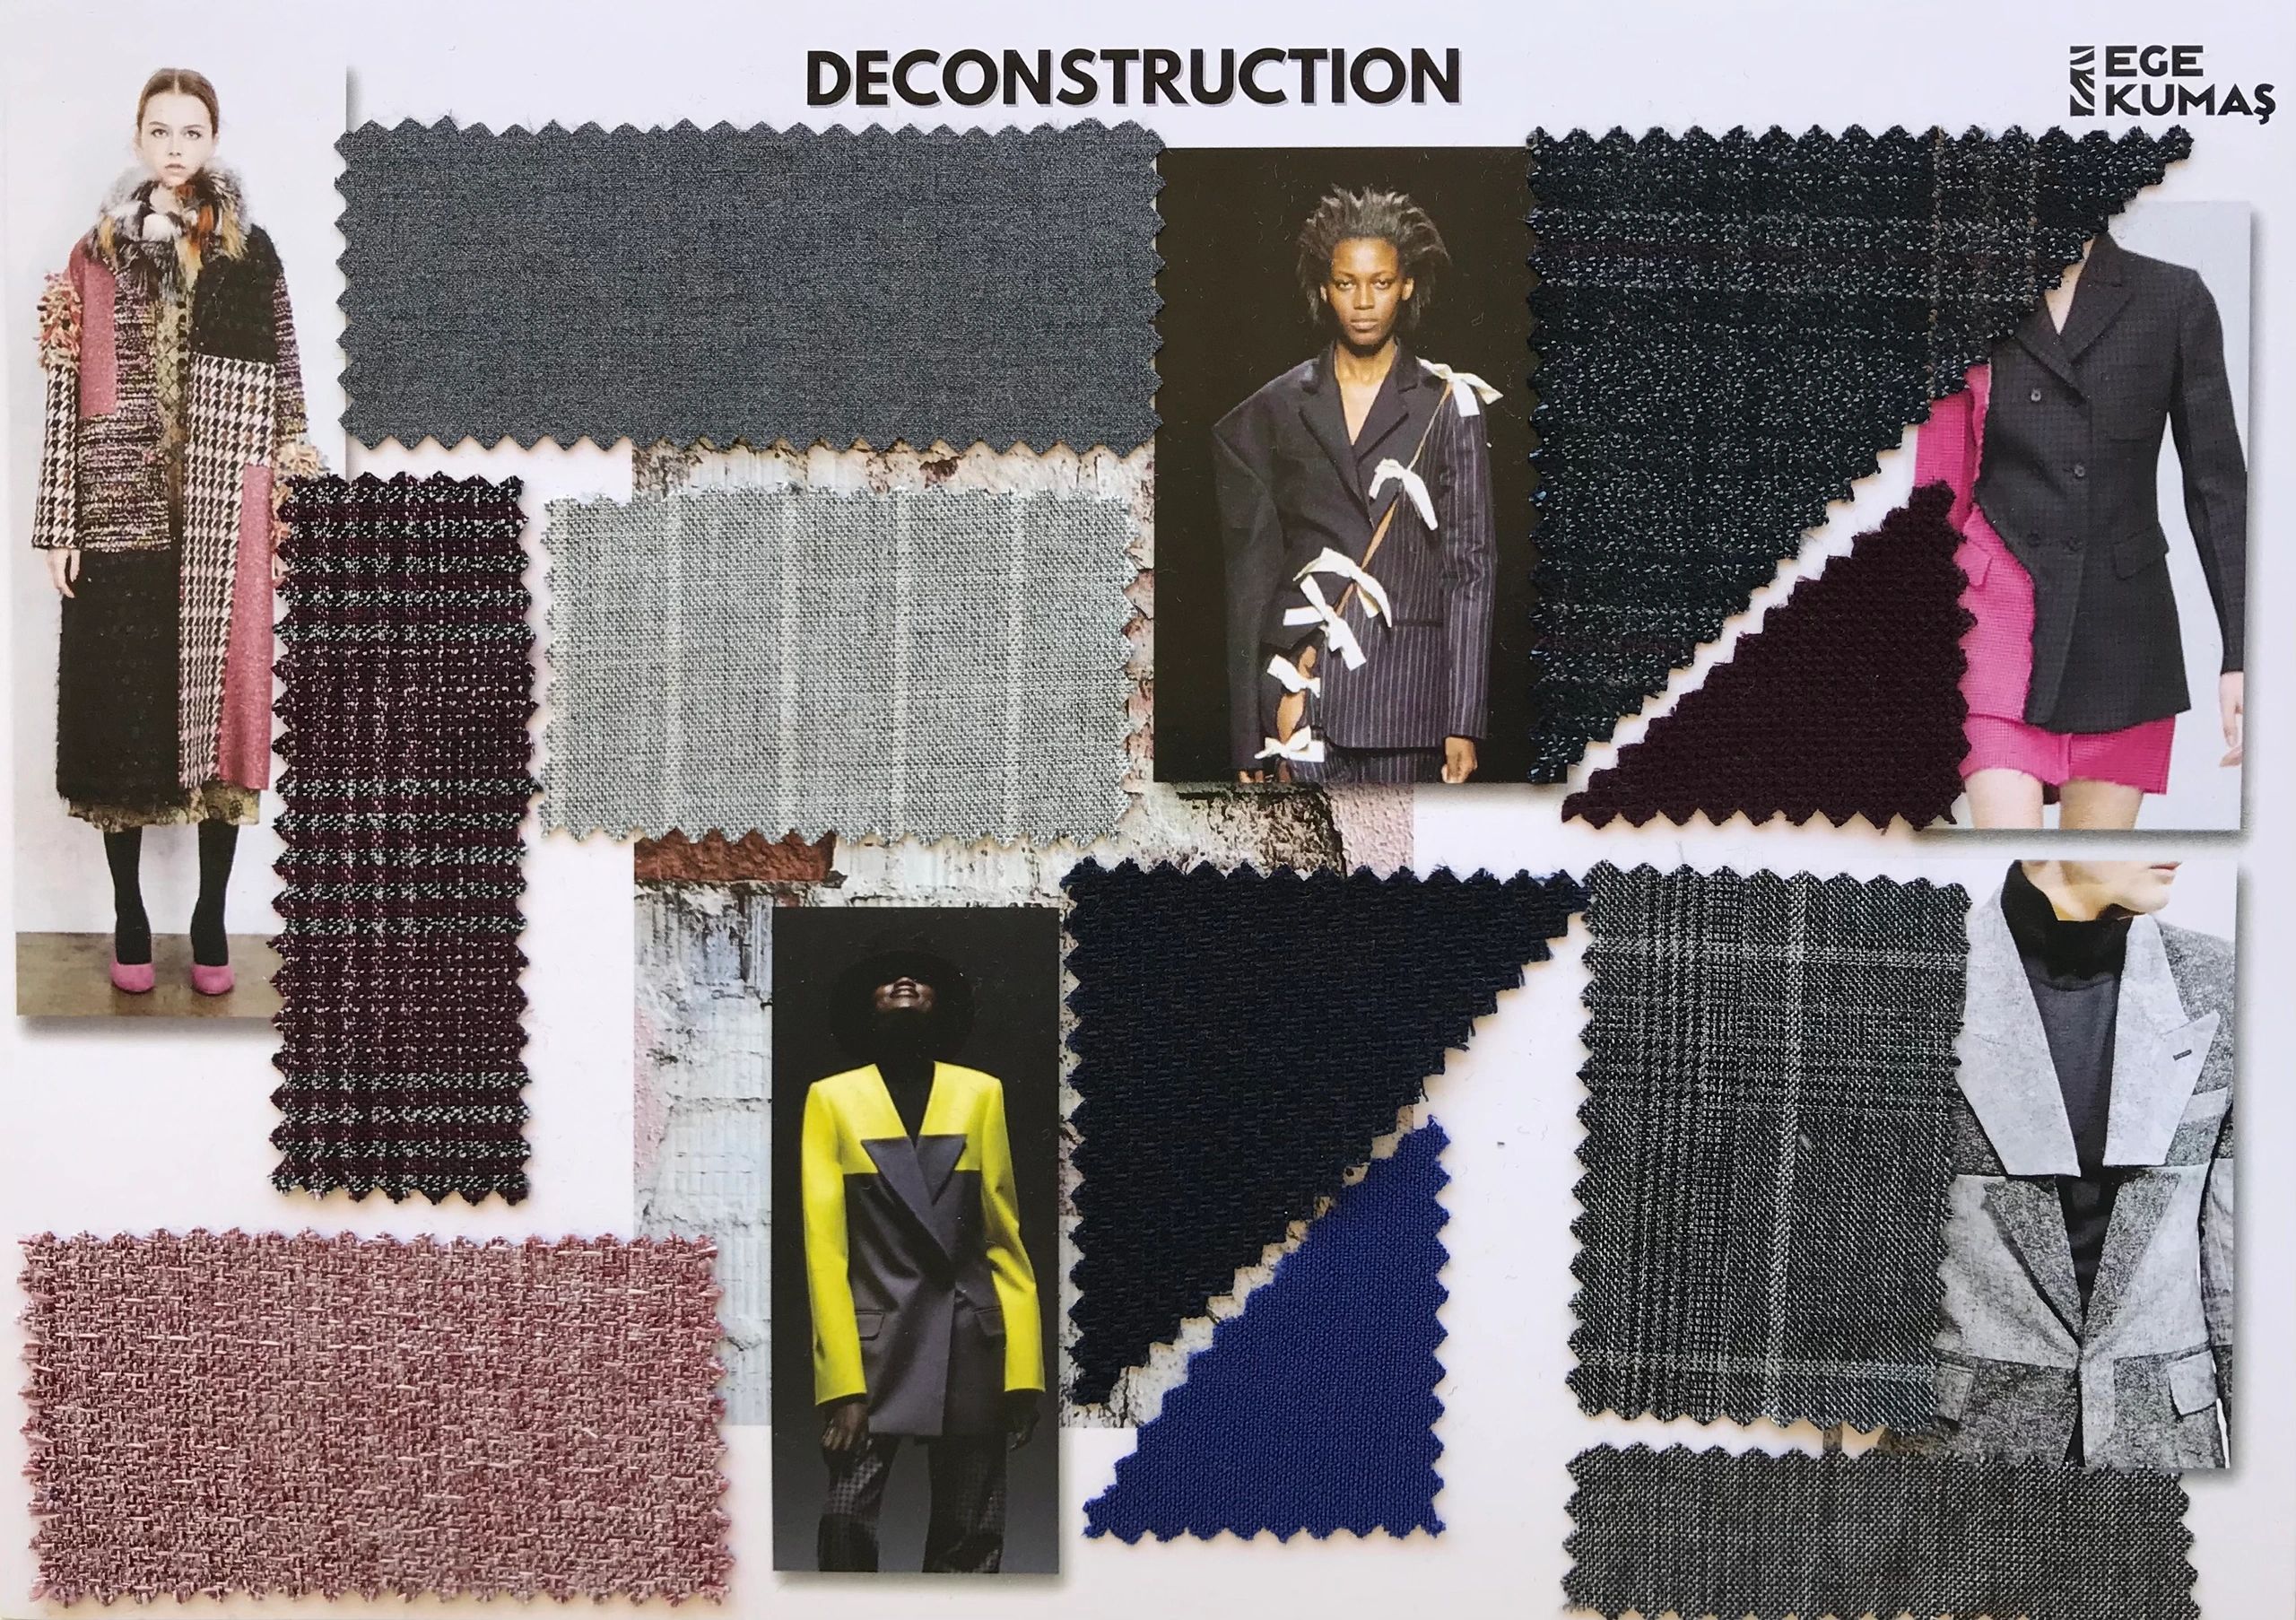 kumaş tekstil moda ilham panosu tasarımı hazırlanması yapılması
fabric textile moodboard
mood board